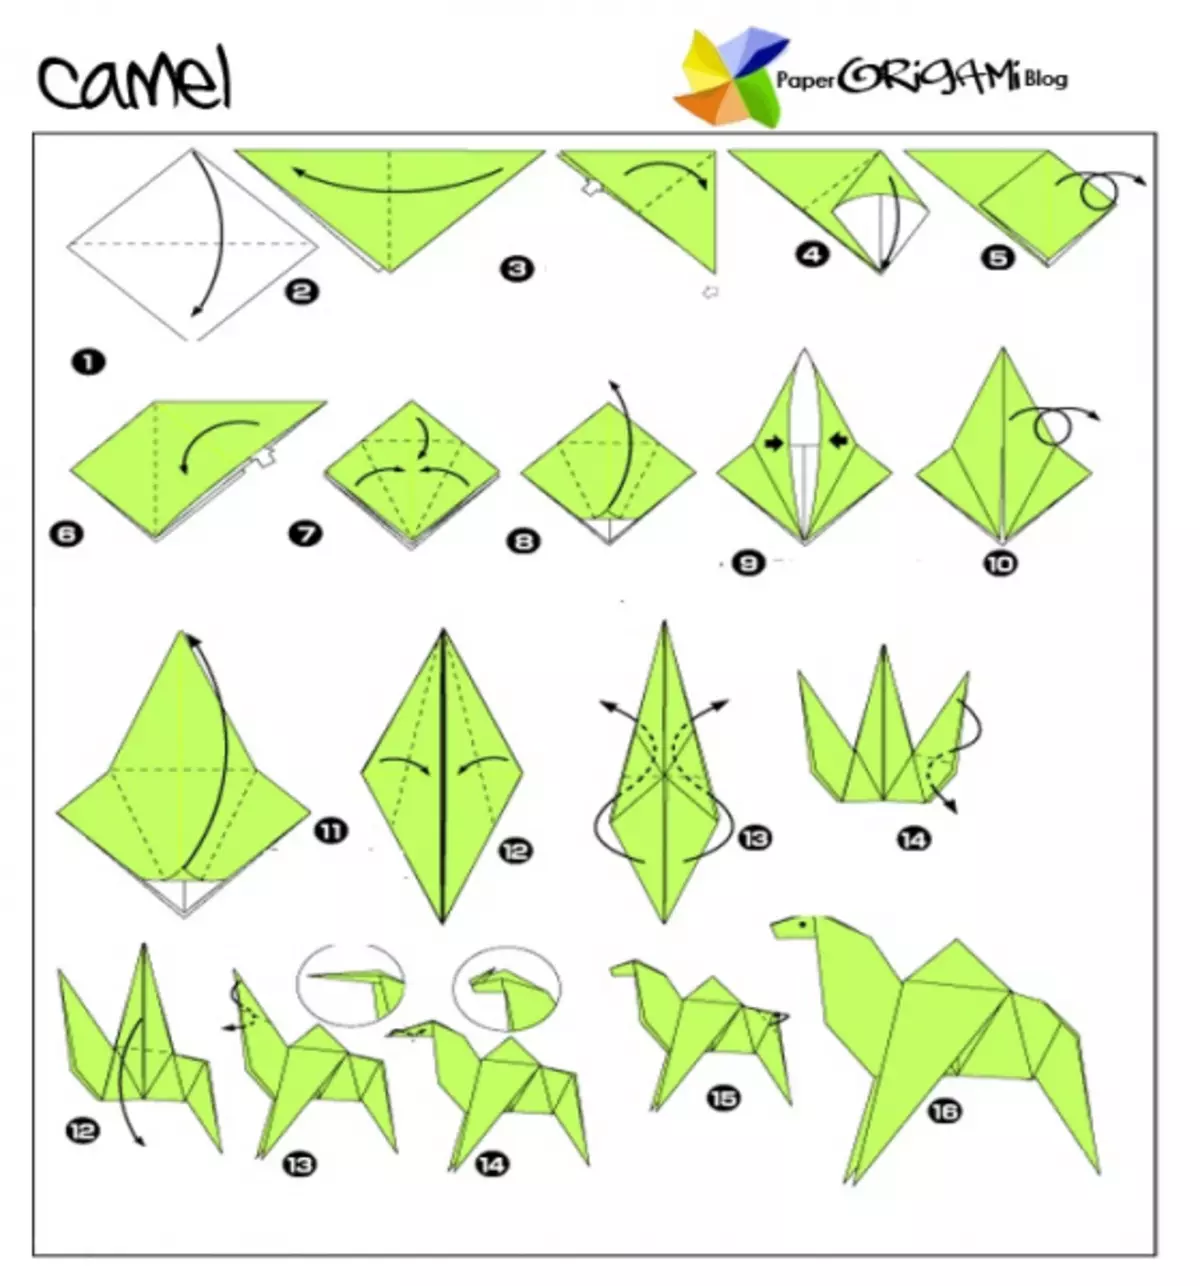 Origami por infanoj kun skemoj: majstraj klasoj kun fotoj kaj videoj